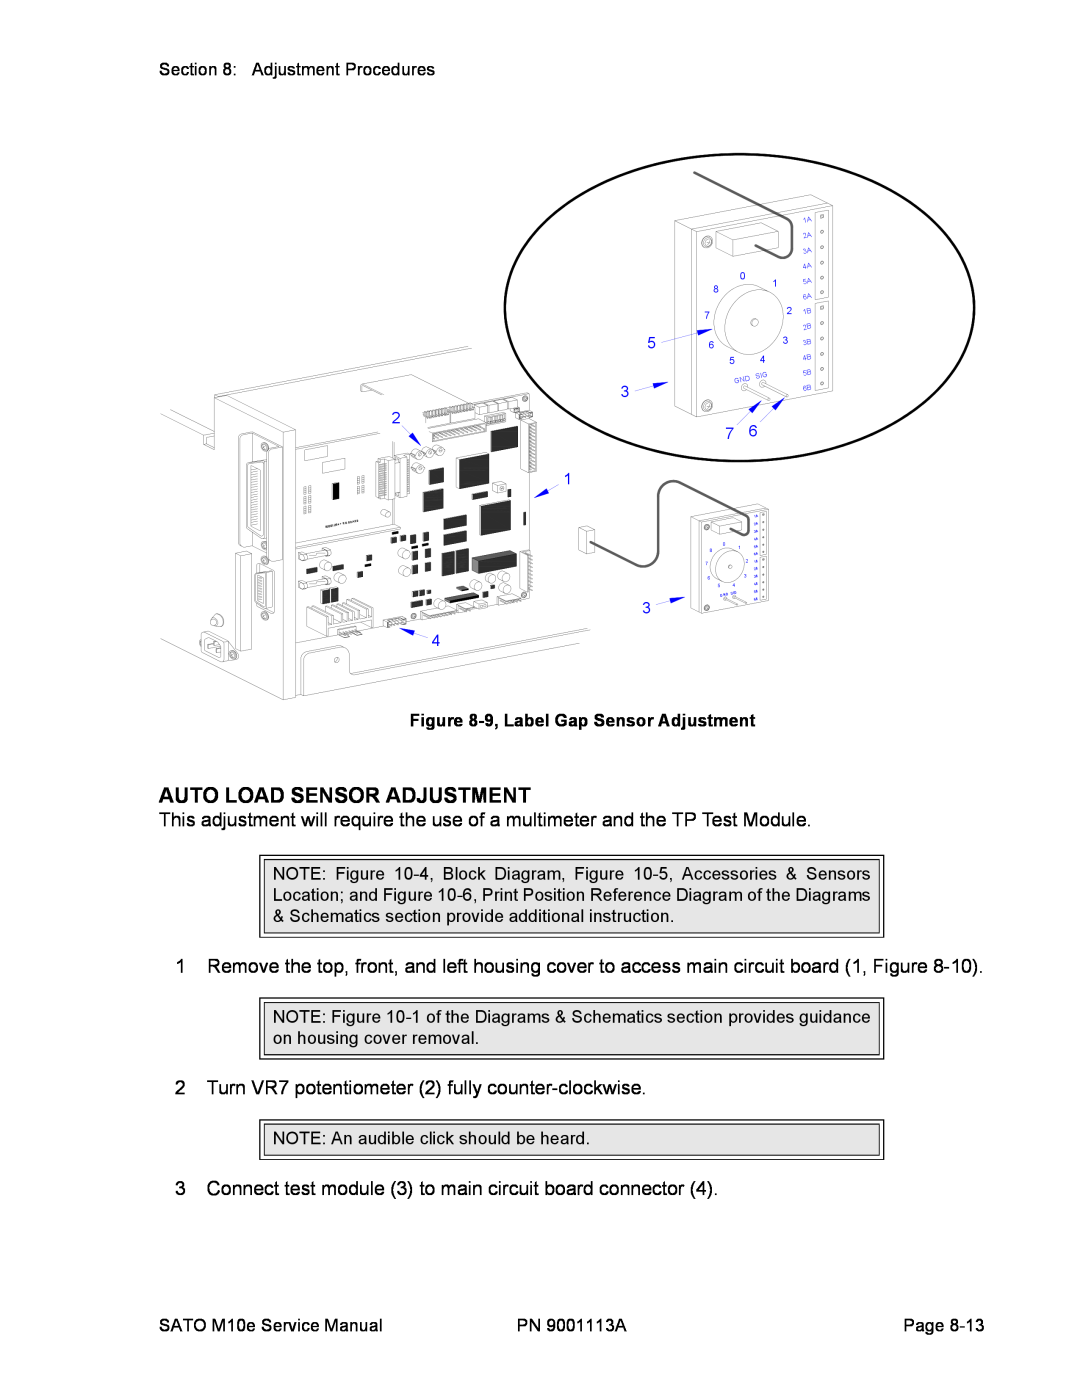 SATO 10e service manual Auto Load Sensor Adjustment, 9, Label Gap Sensor Adjustment 